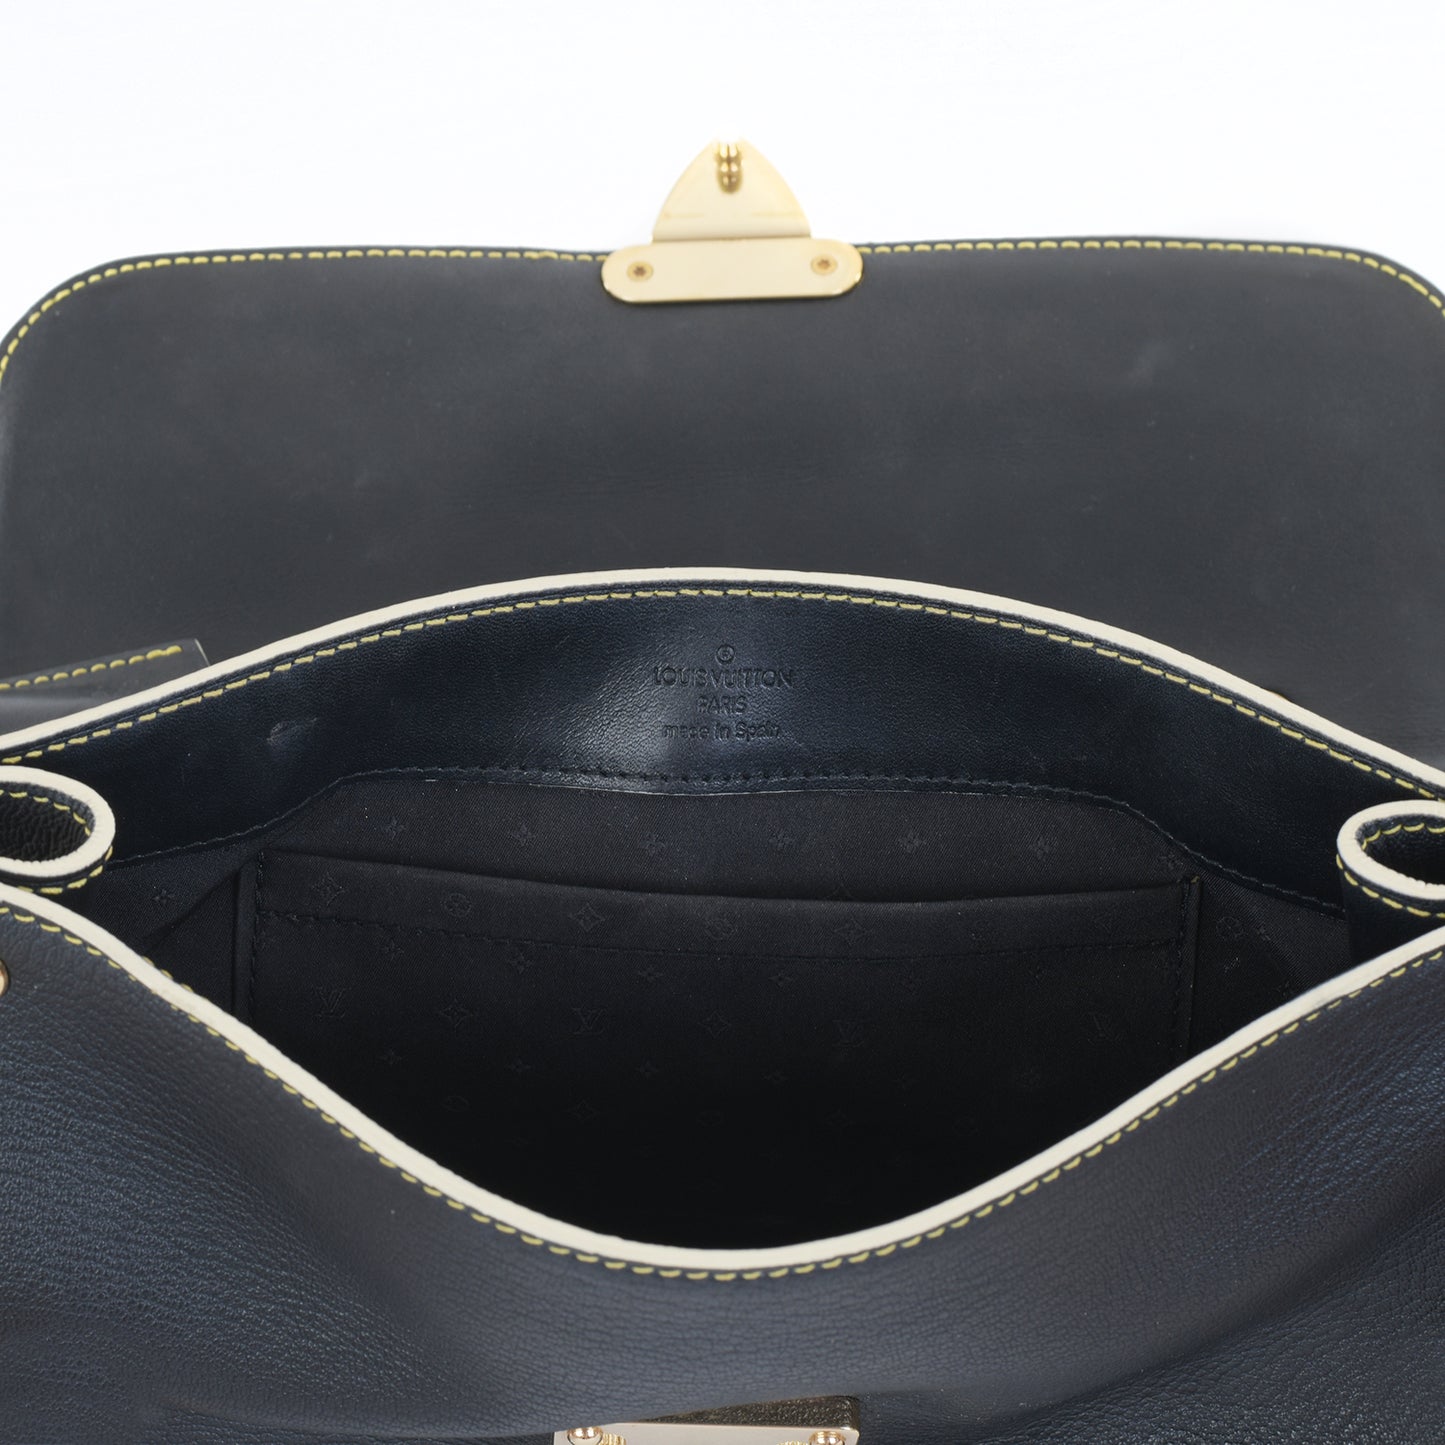 Suhali Leather Le Talentueux Bag